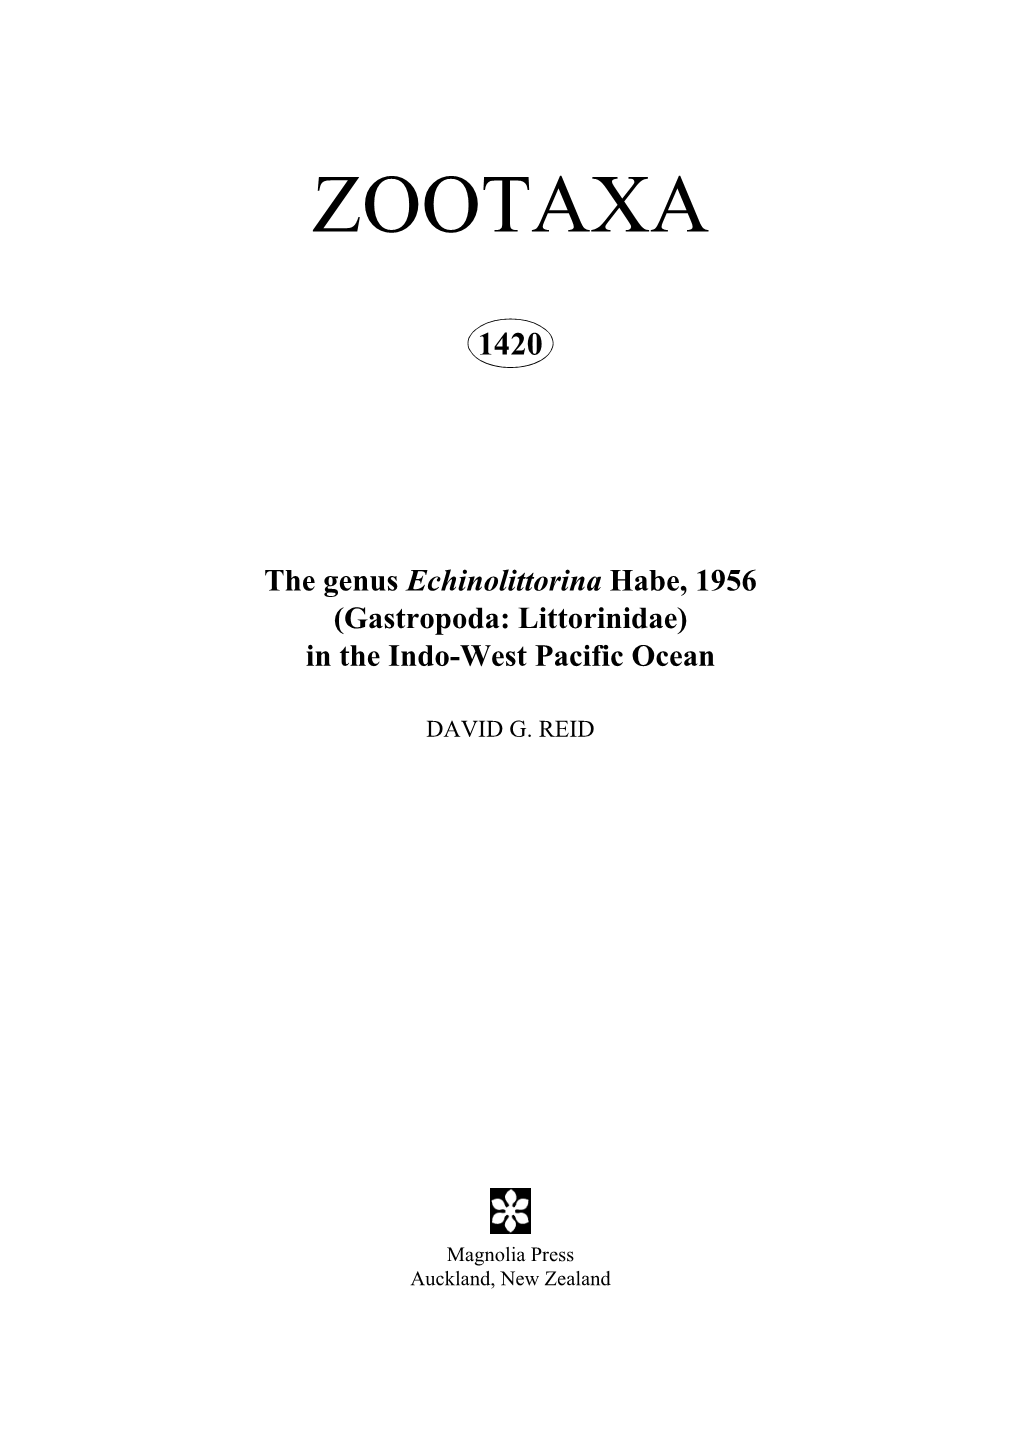 Zootaxa, the Genus Echinolittorina Habe, 1956